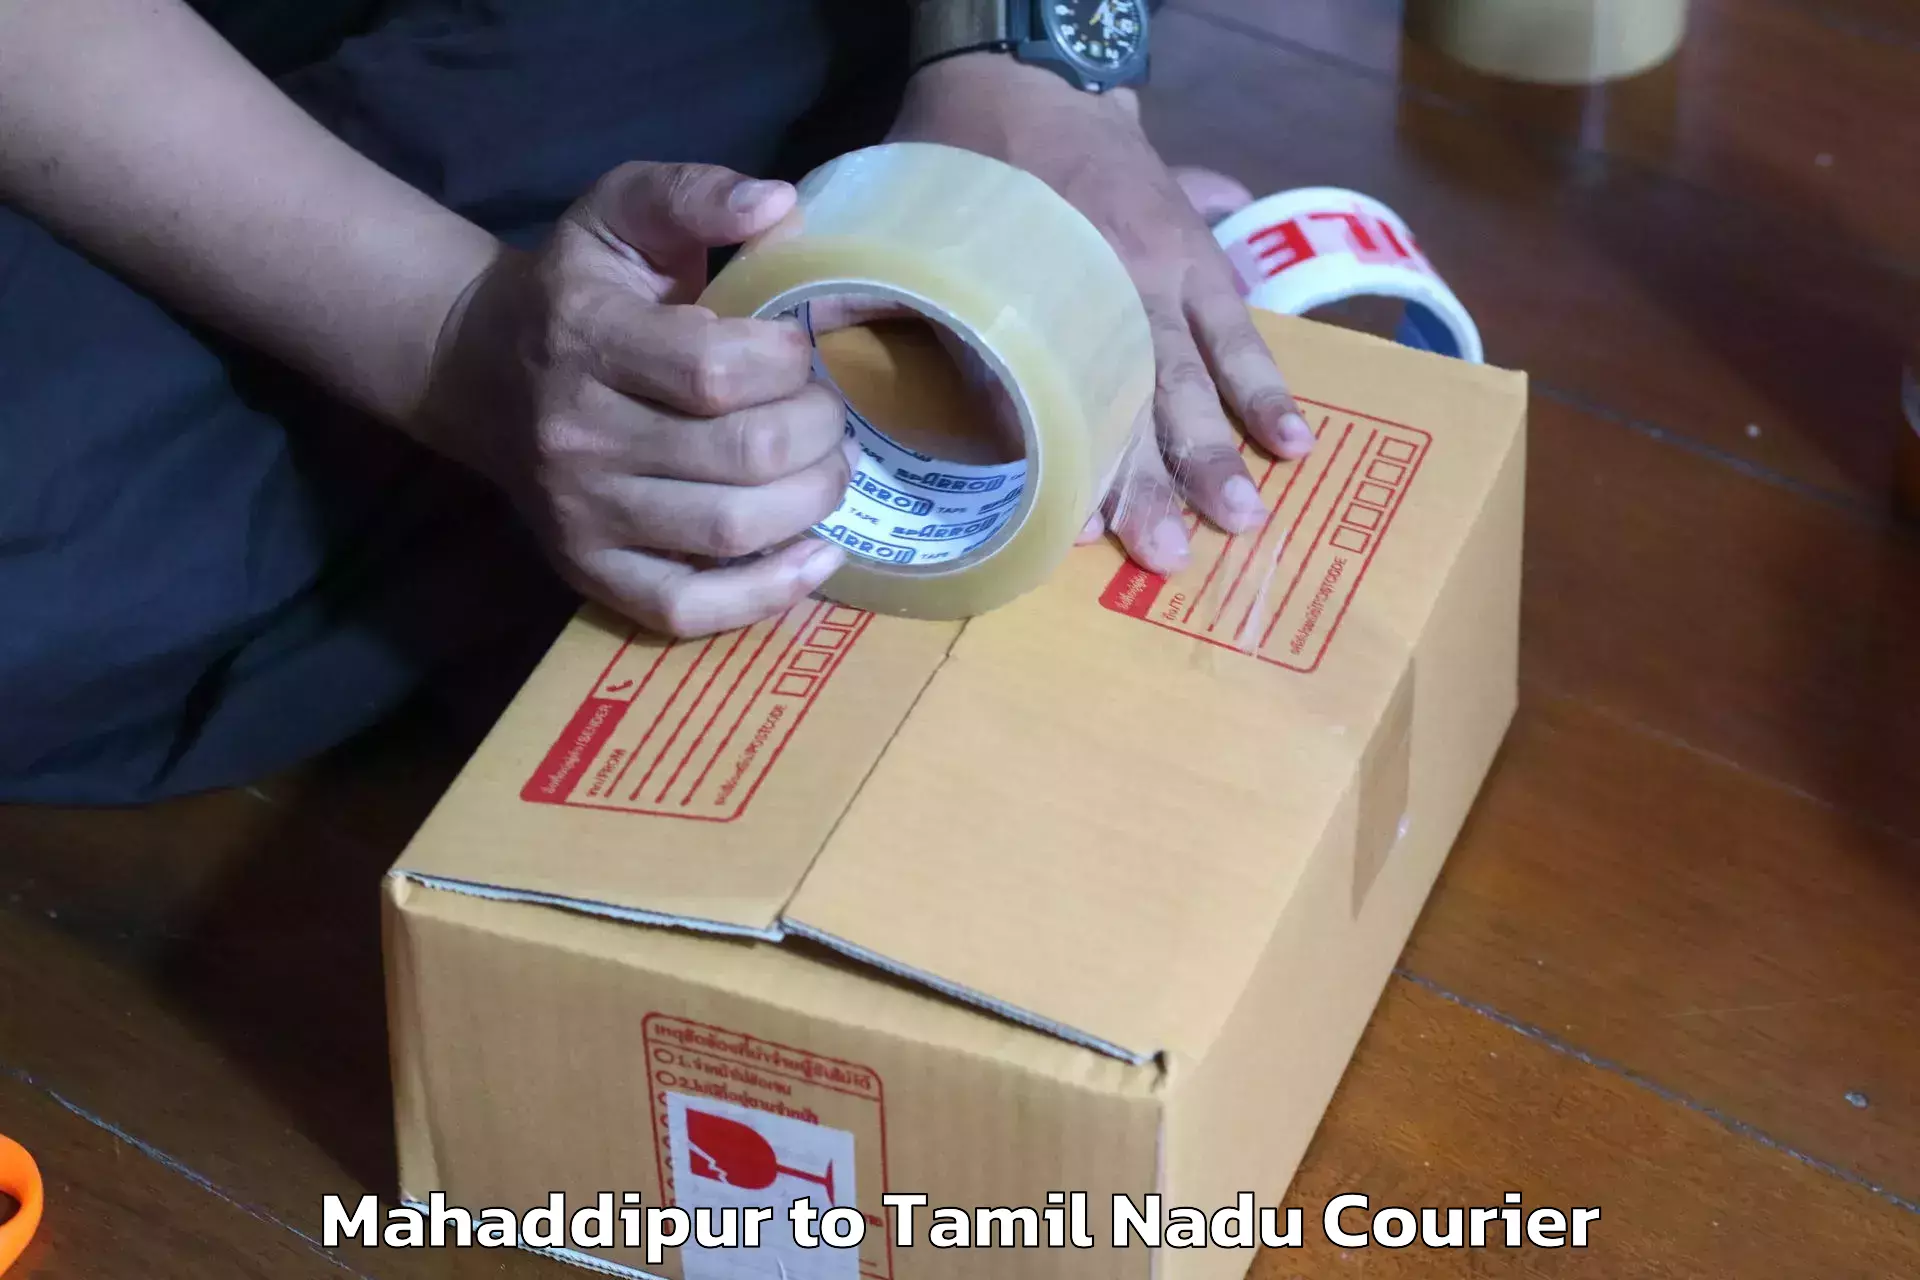 Skilled movers Mahaddipur to Tamil Nadu